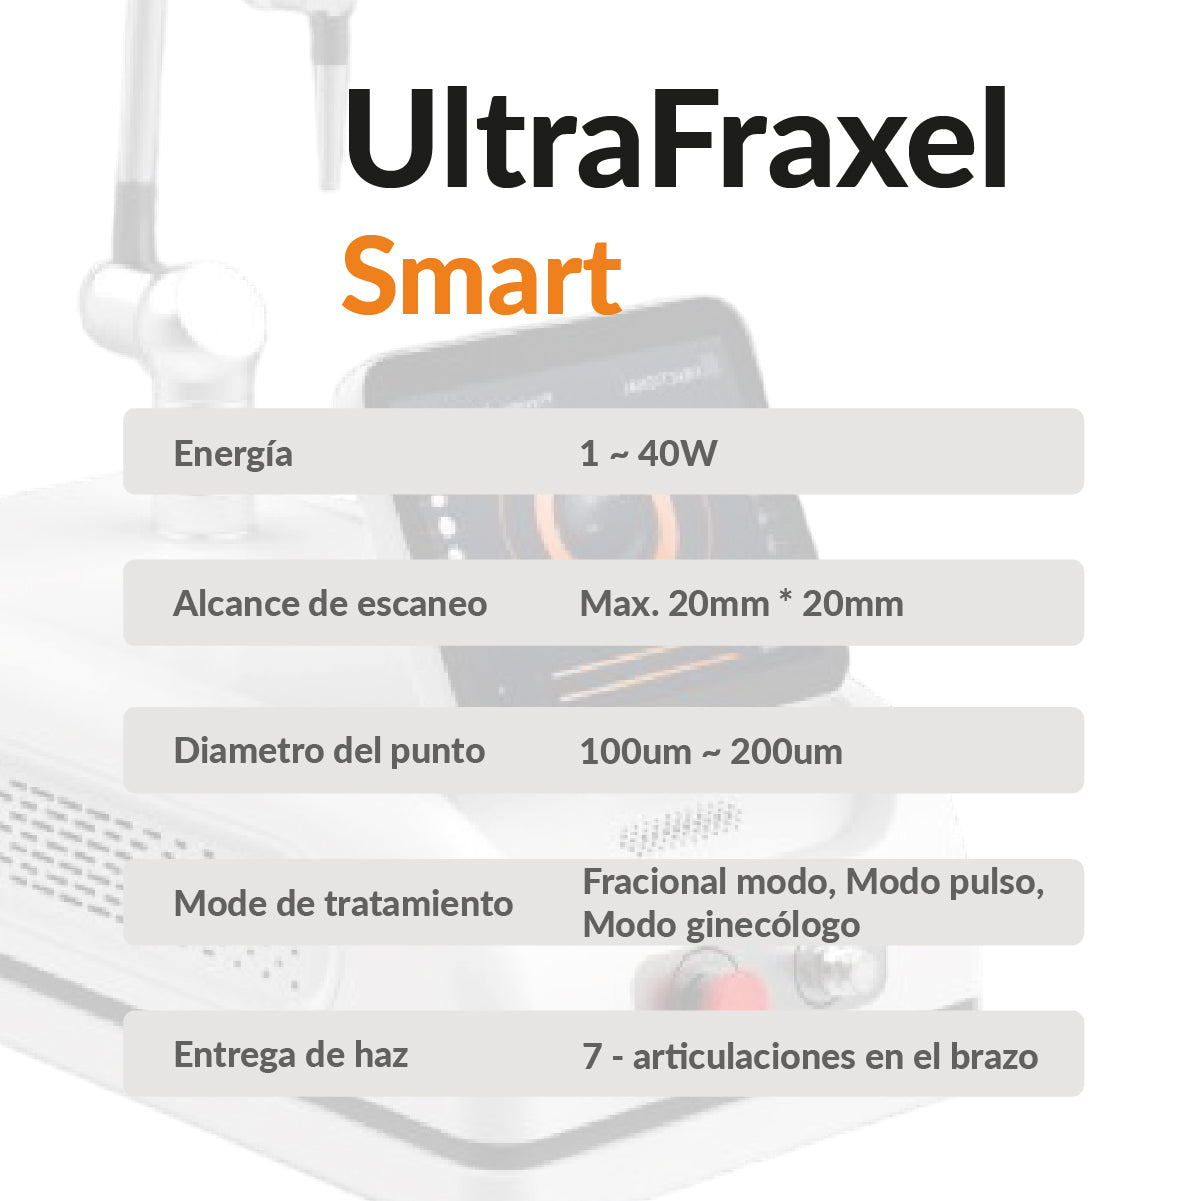 UltraFraxel Smart